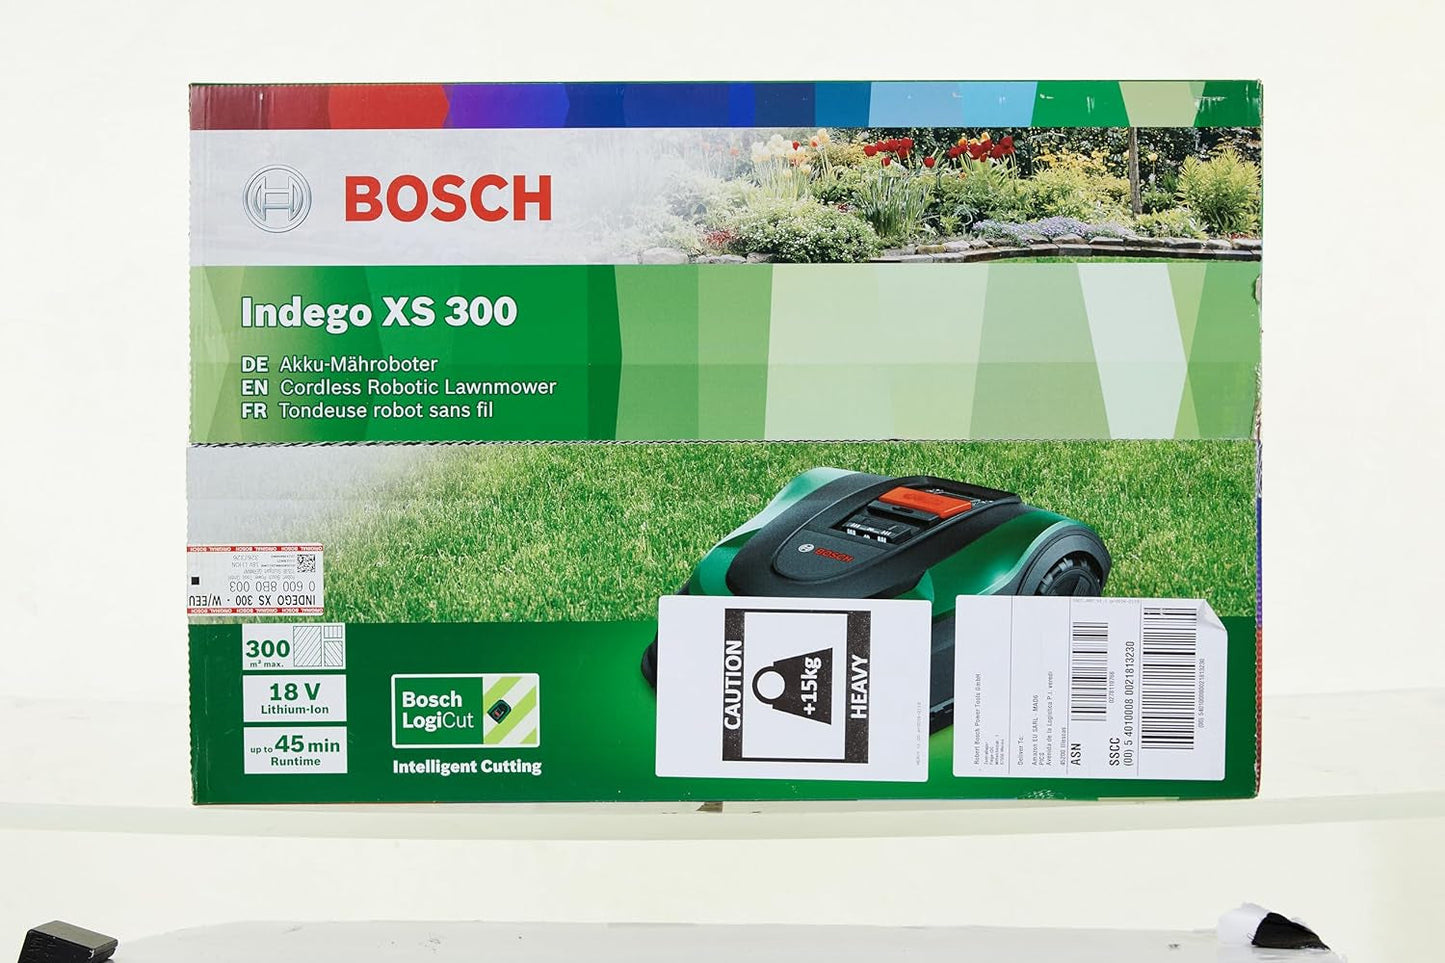 Bosch Home and Garden Rasenmäher Roboter Indego XS 300 (Mit Integriertem 18-V-Akku, Ladestation Enthalten, Schnittbreite 19 Cm, Für Rasenflächen Bis Zu 300 M², Im Karton) Schwarz, Grün